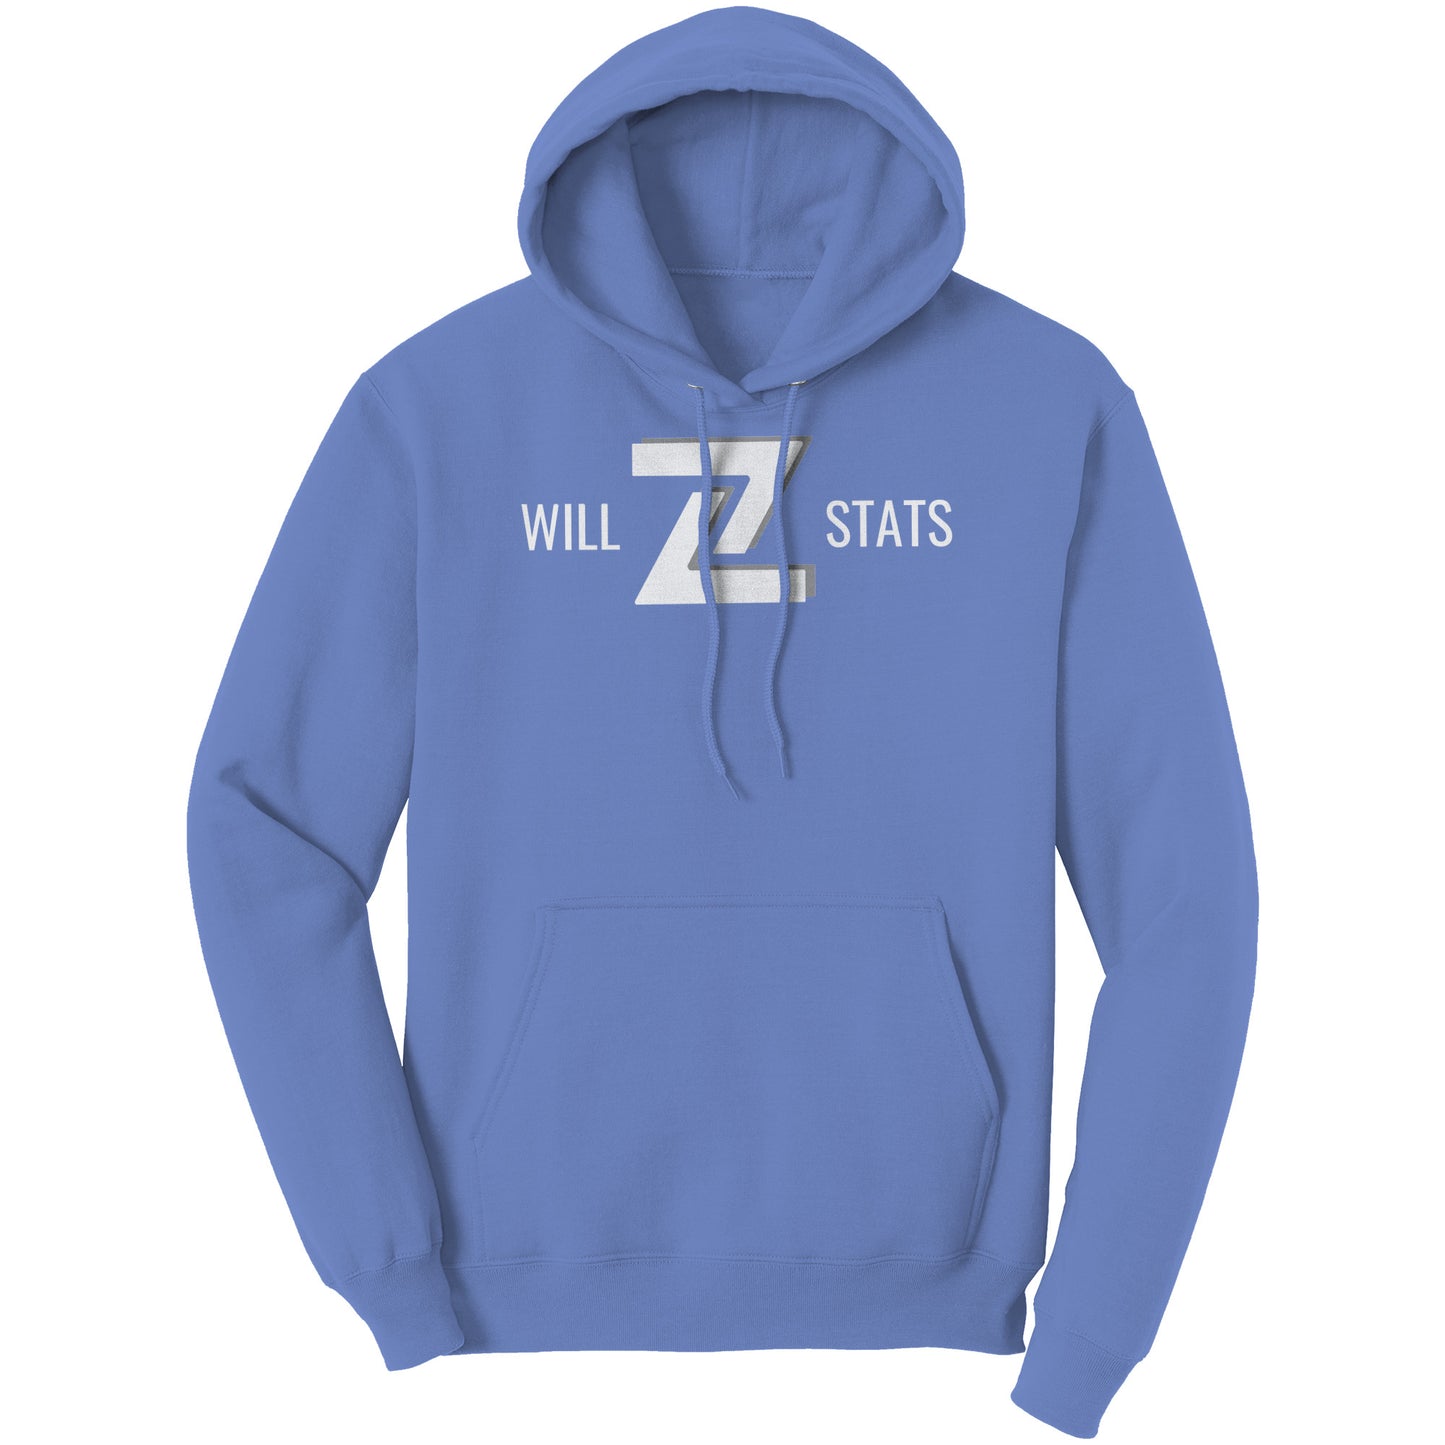 Will Z Stats: The Stattie Baddie